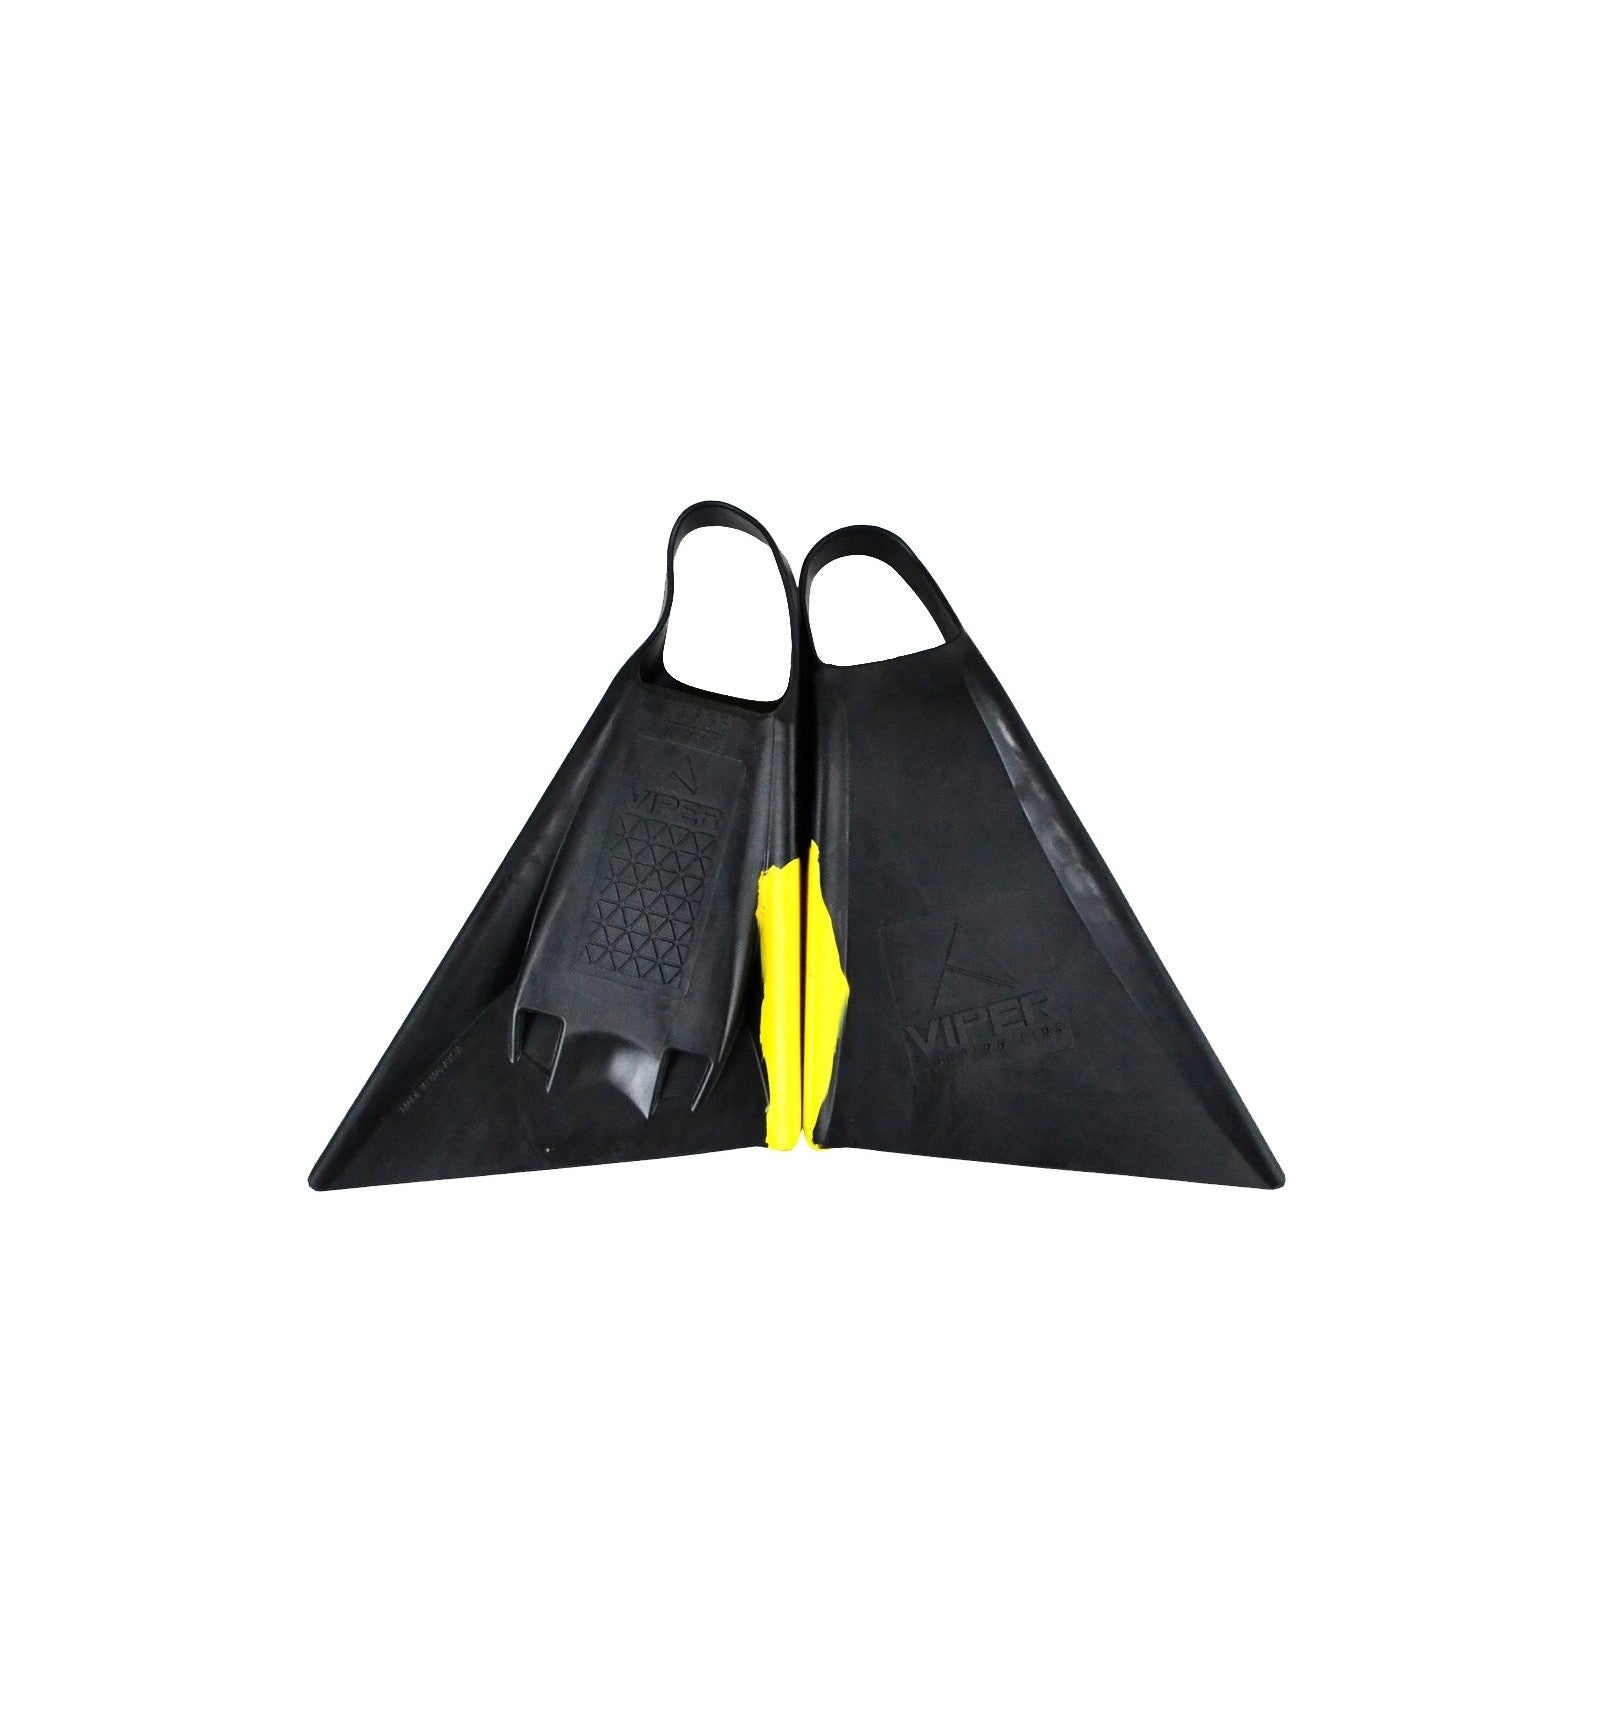 MS VIPER Delta - Palmes Bodyboard - Black / Yellow